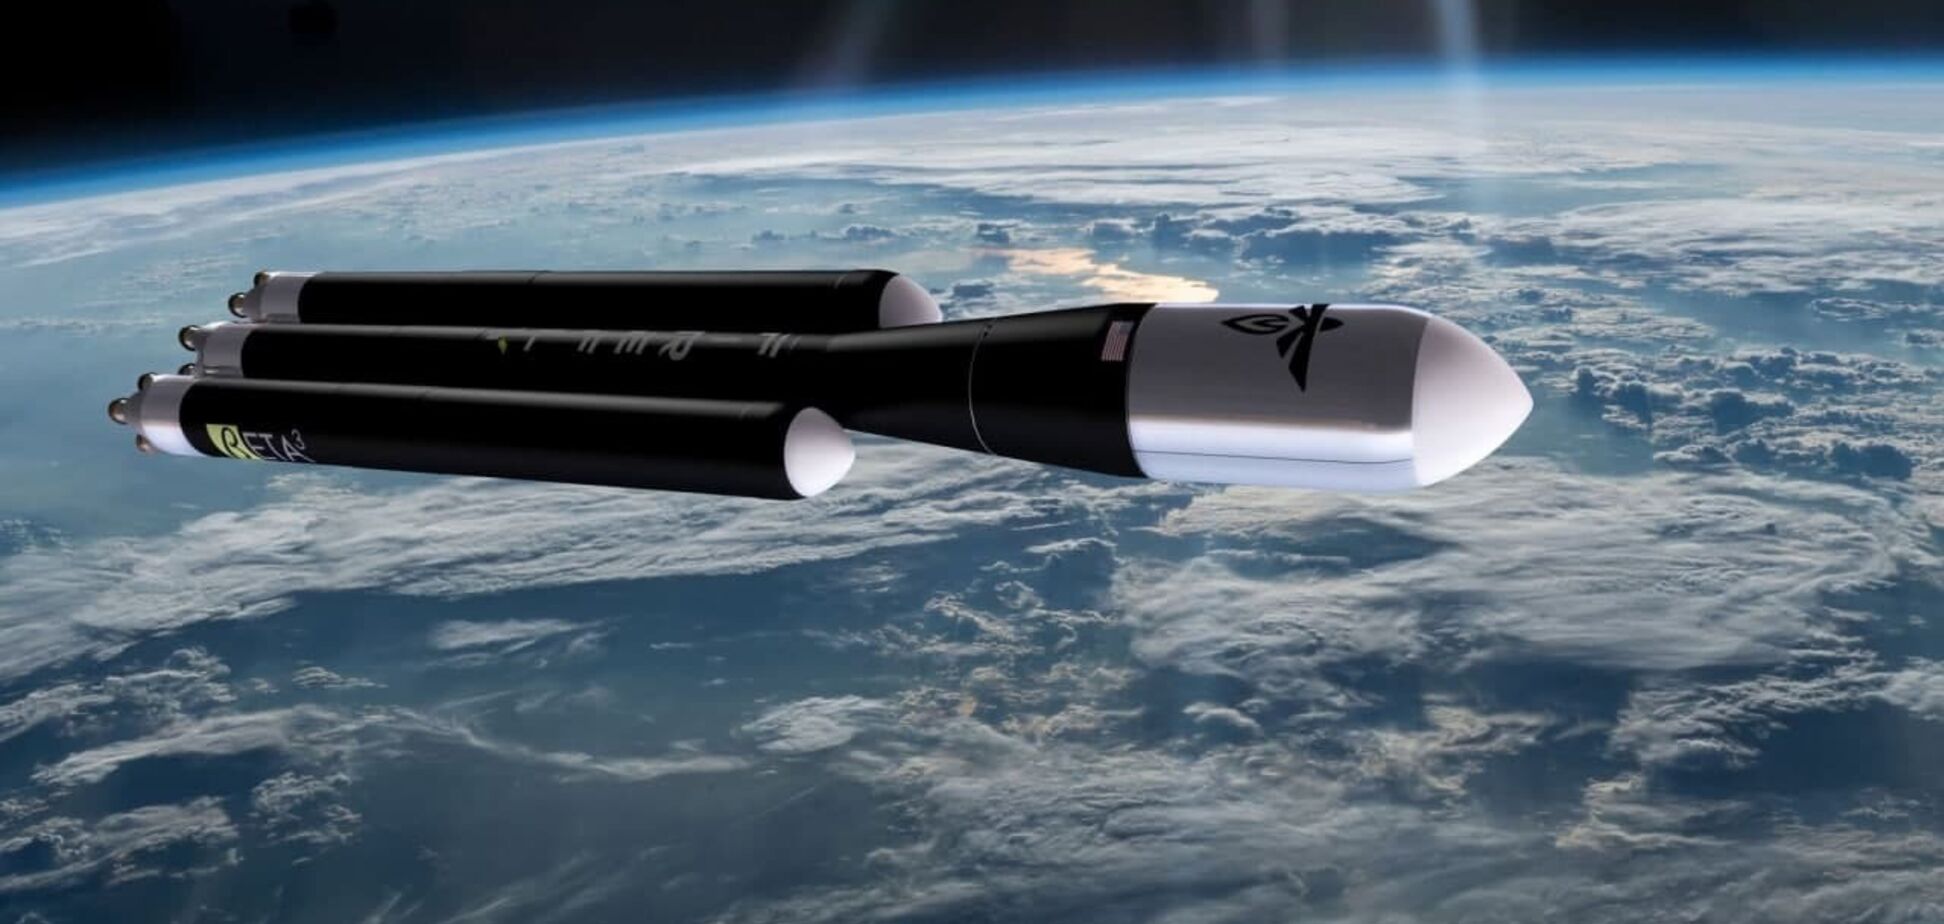 Компания Firefly Aerospace украинца Полякова привлечет $350 миллионов и создаст новую ракету